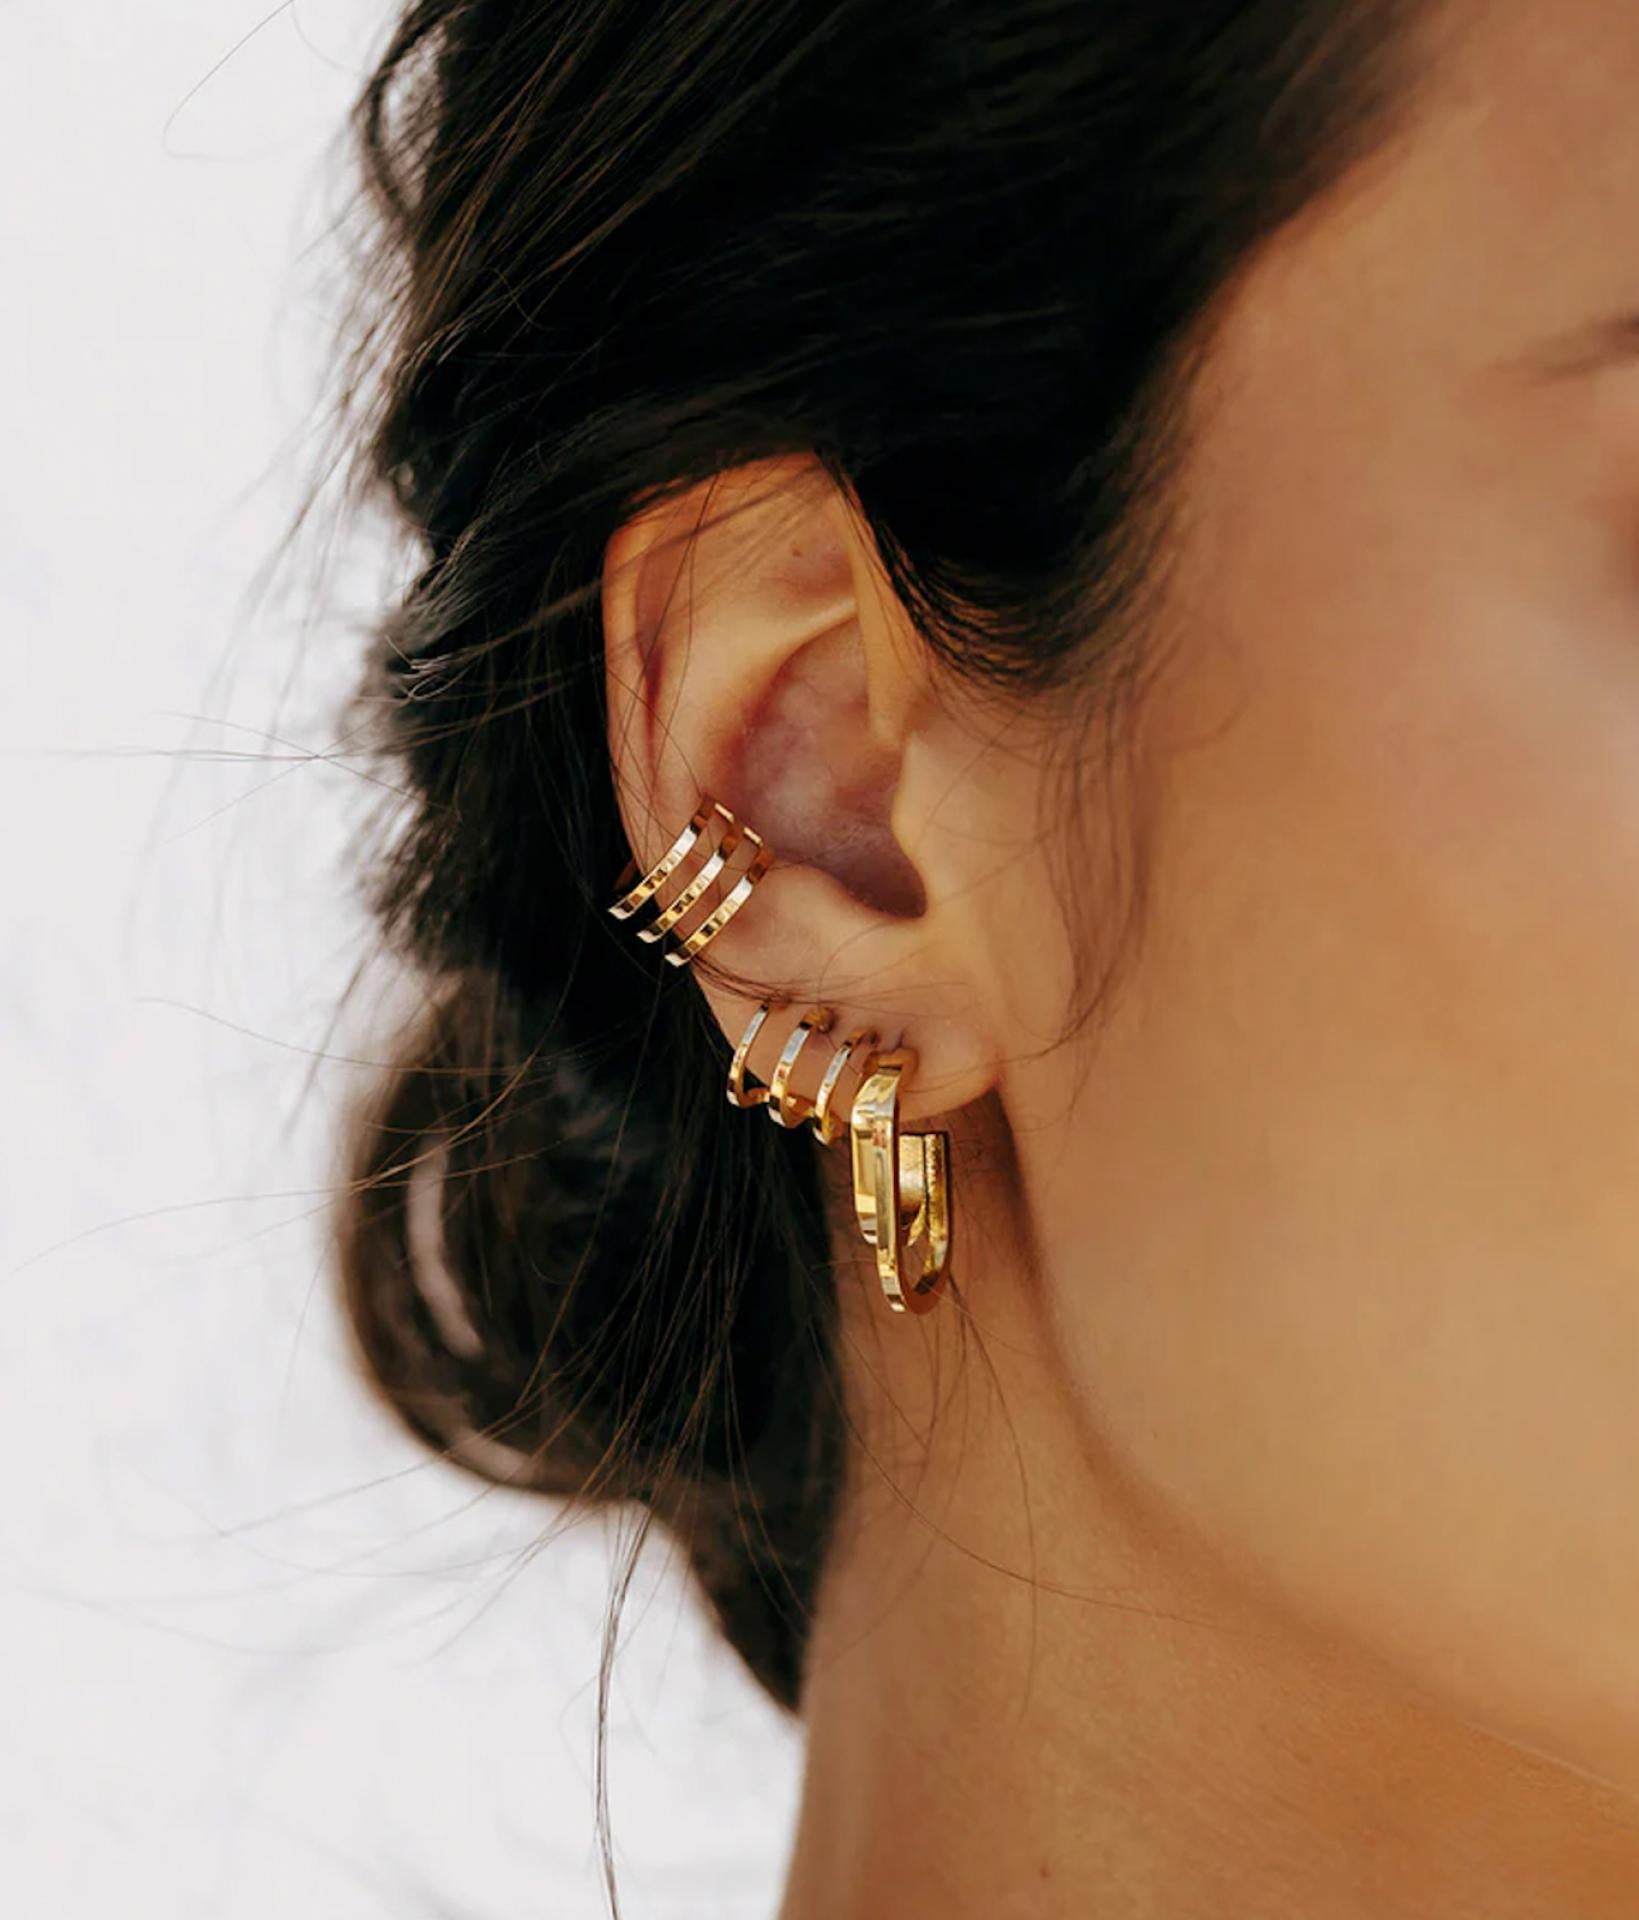 braunhaariges model am rechten ohr mit Zag Bijoux Ohrringe aus goldenen halbringen